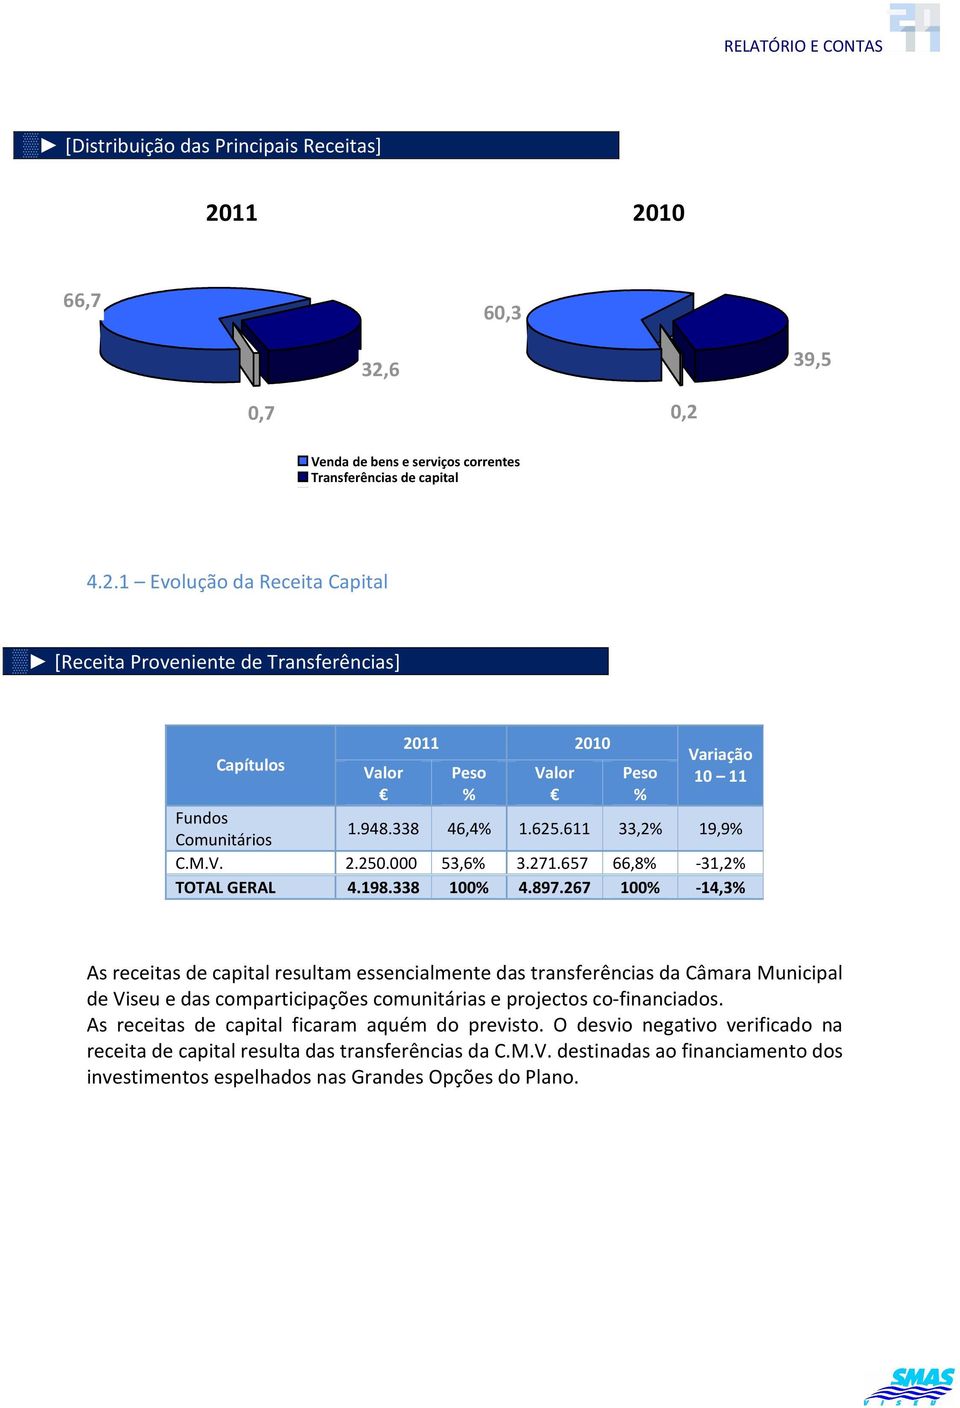 267 100-14,3 As receitas de capital resultam essencialmente das transferências da Câmara Municipal de Viseu e das comparticipações comunitárias e projectos co-financiados.